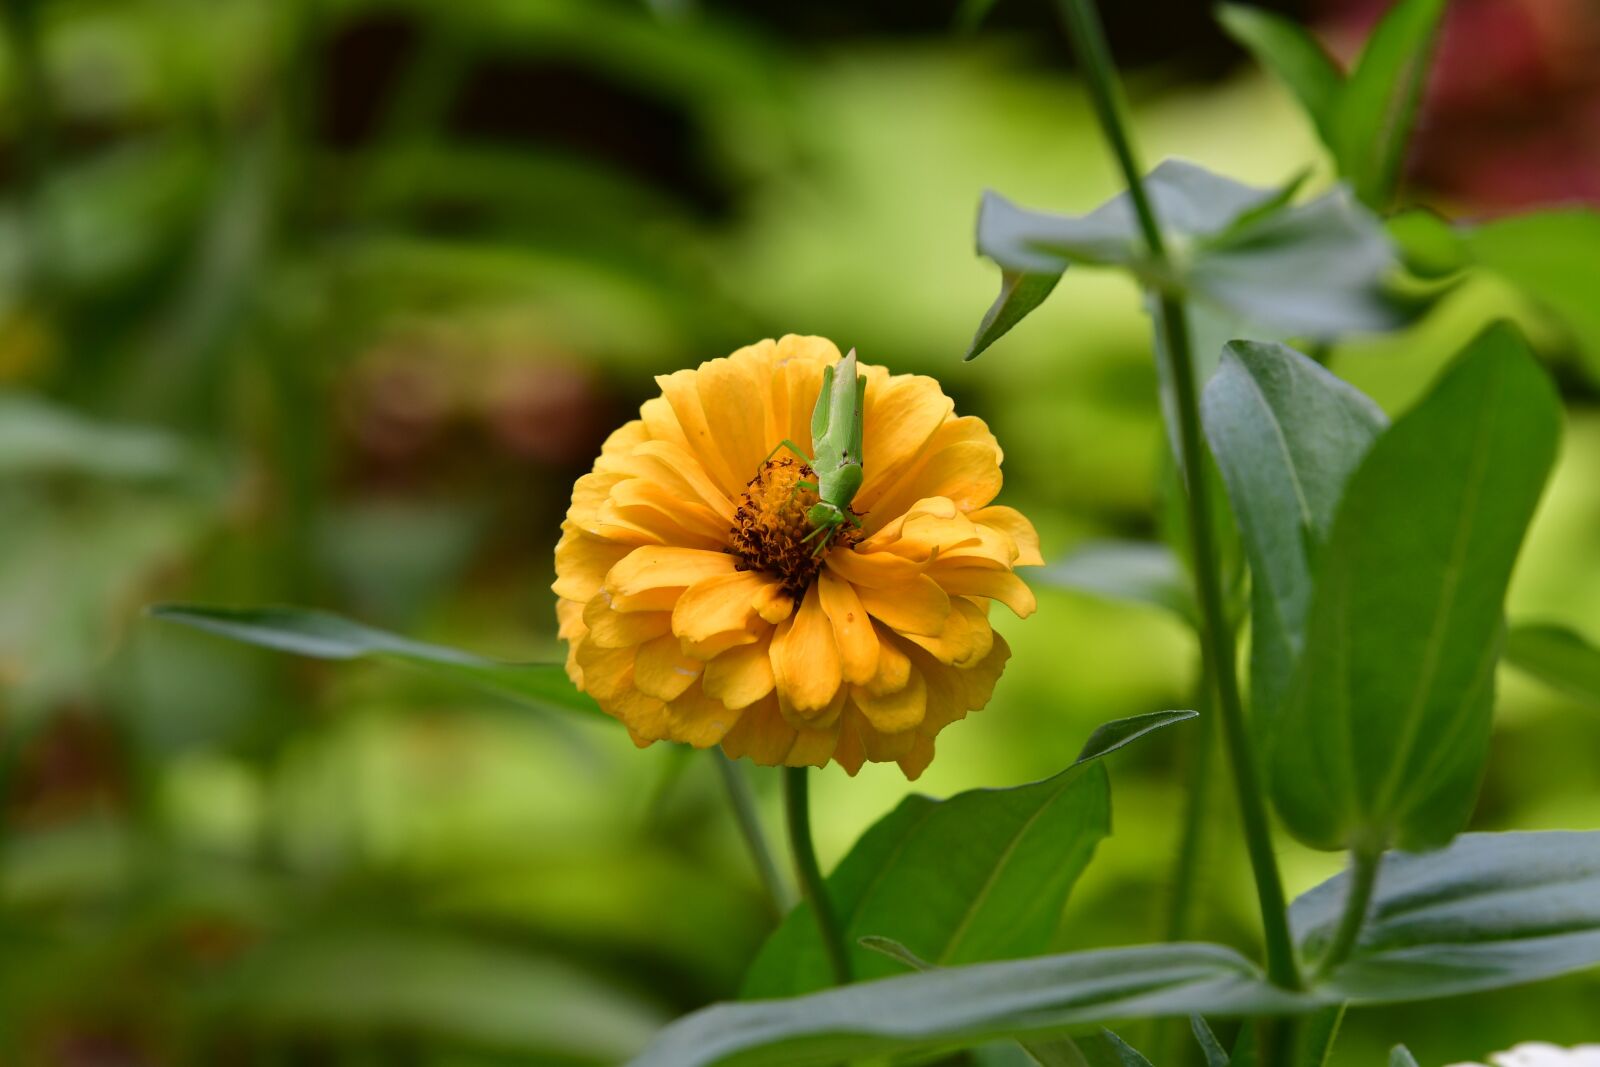 Nikon D500 sample photo. Zinnia flower, yellow petals photography